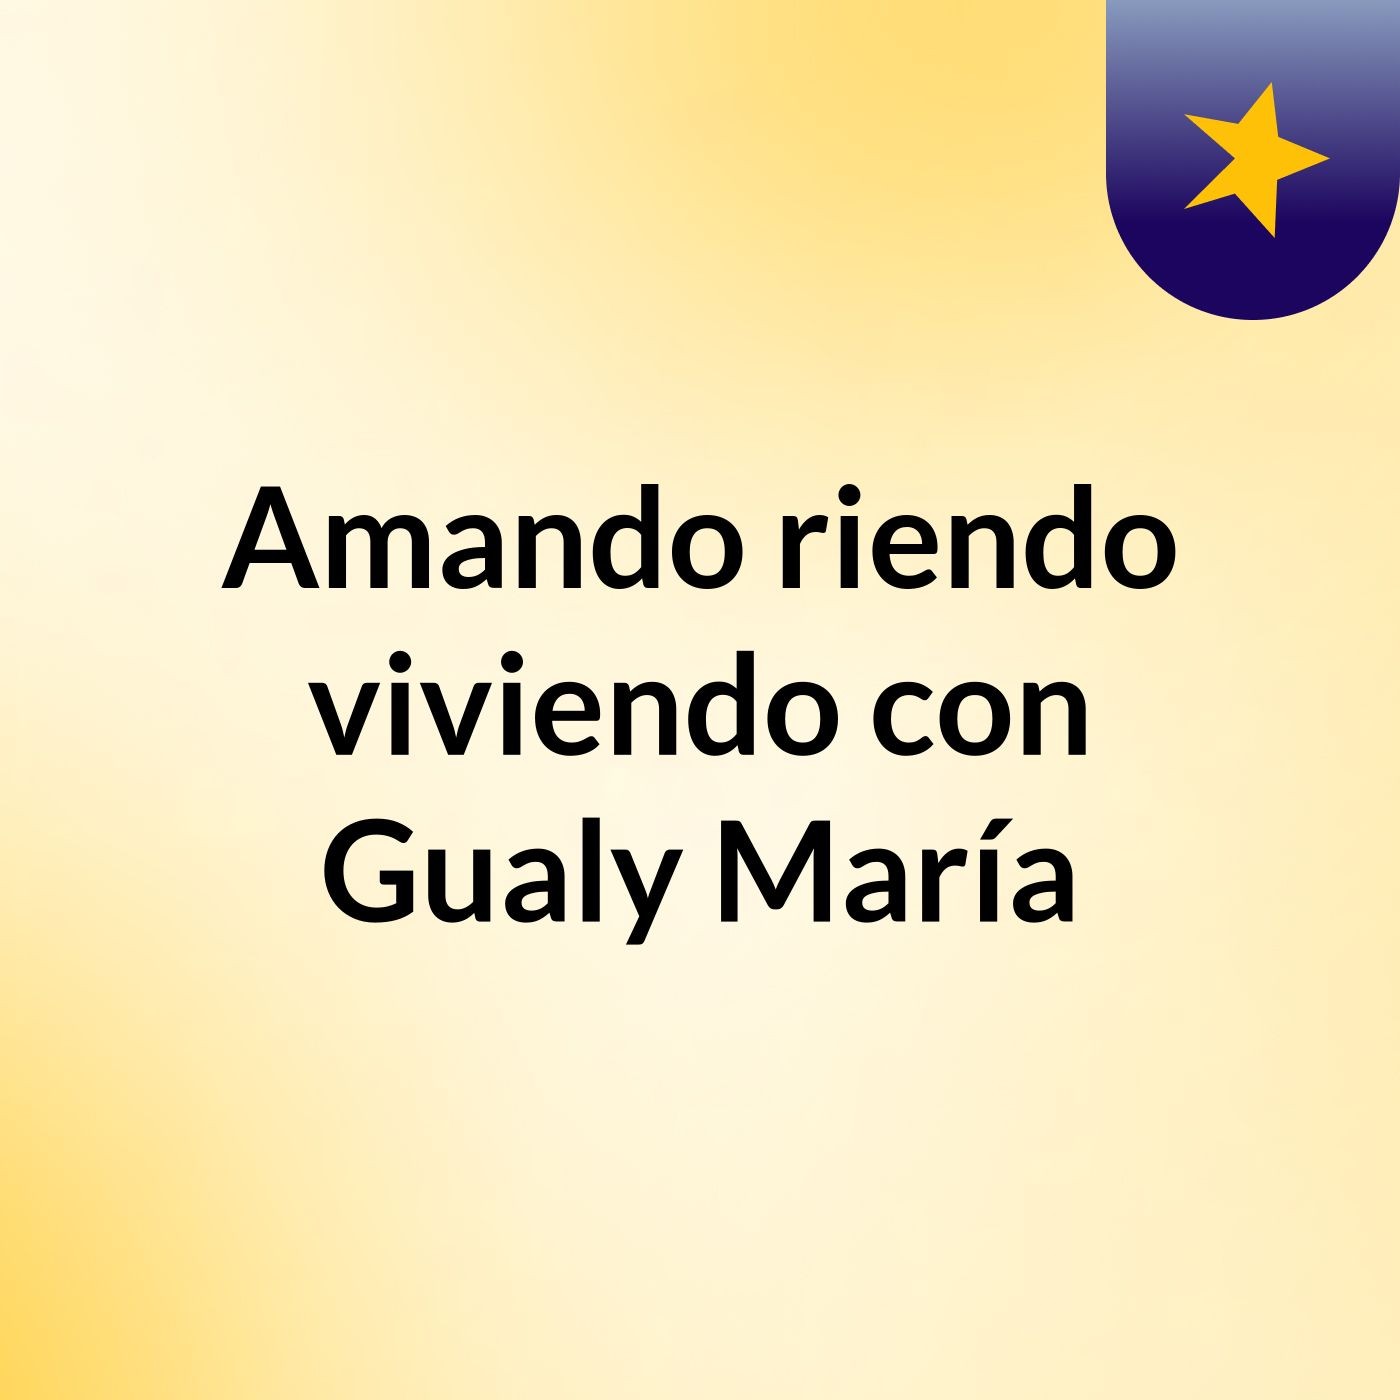 Amando, riendo, viviendo con Gualy María